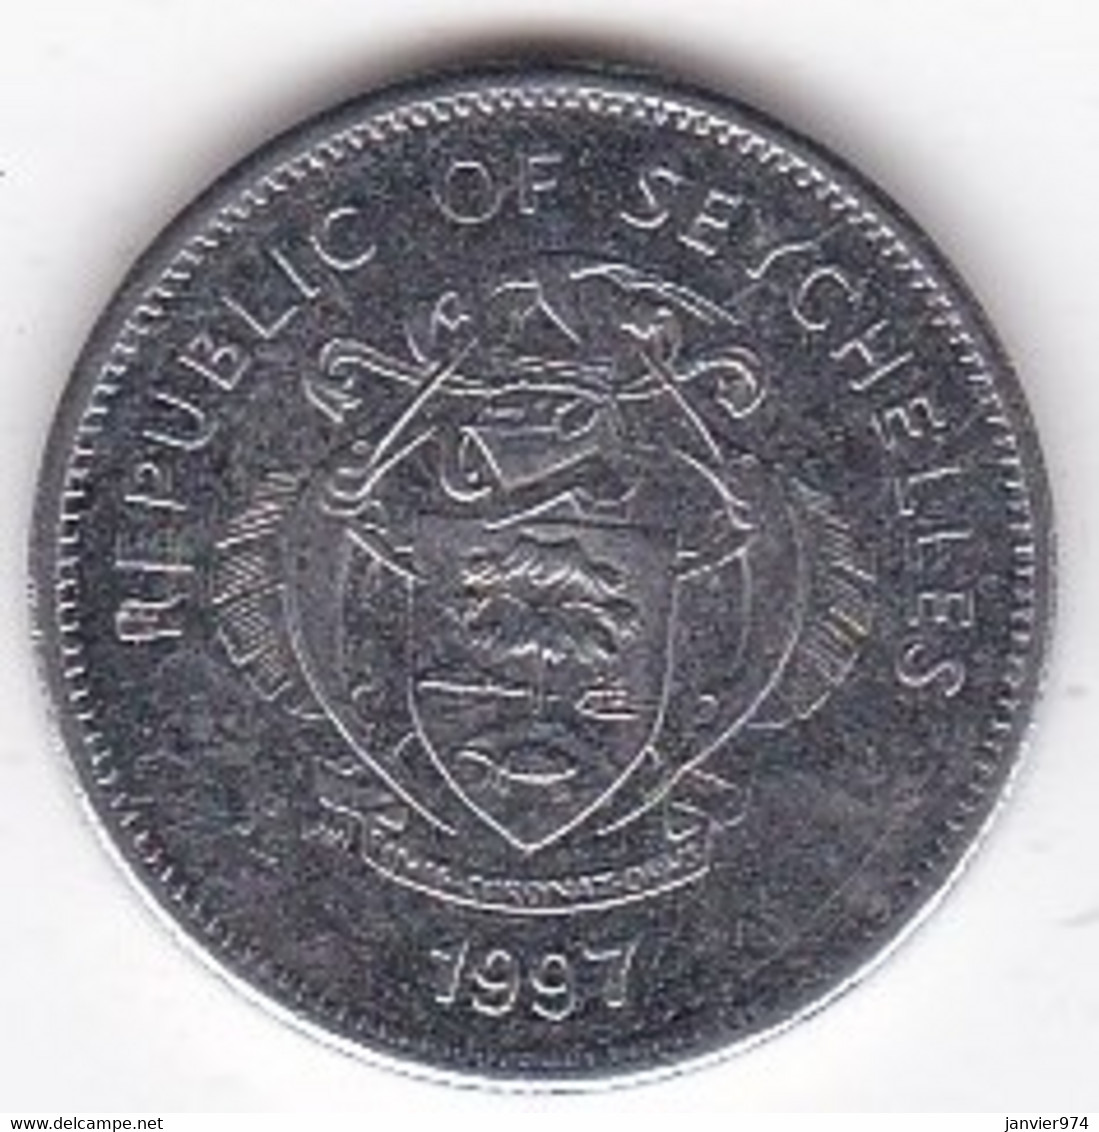 Seychelles 25 Cents 1997. En Cupro Nickel, KM# 49 - Seychellen